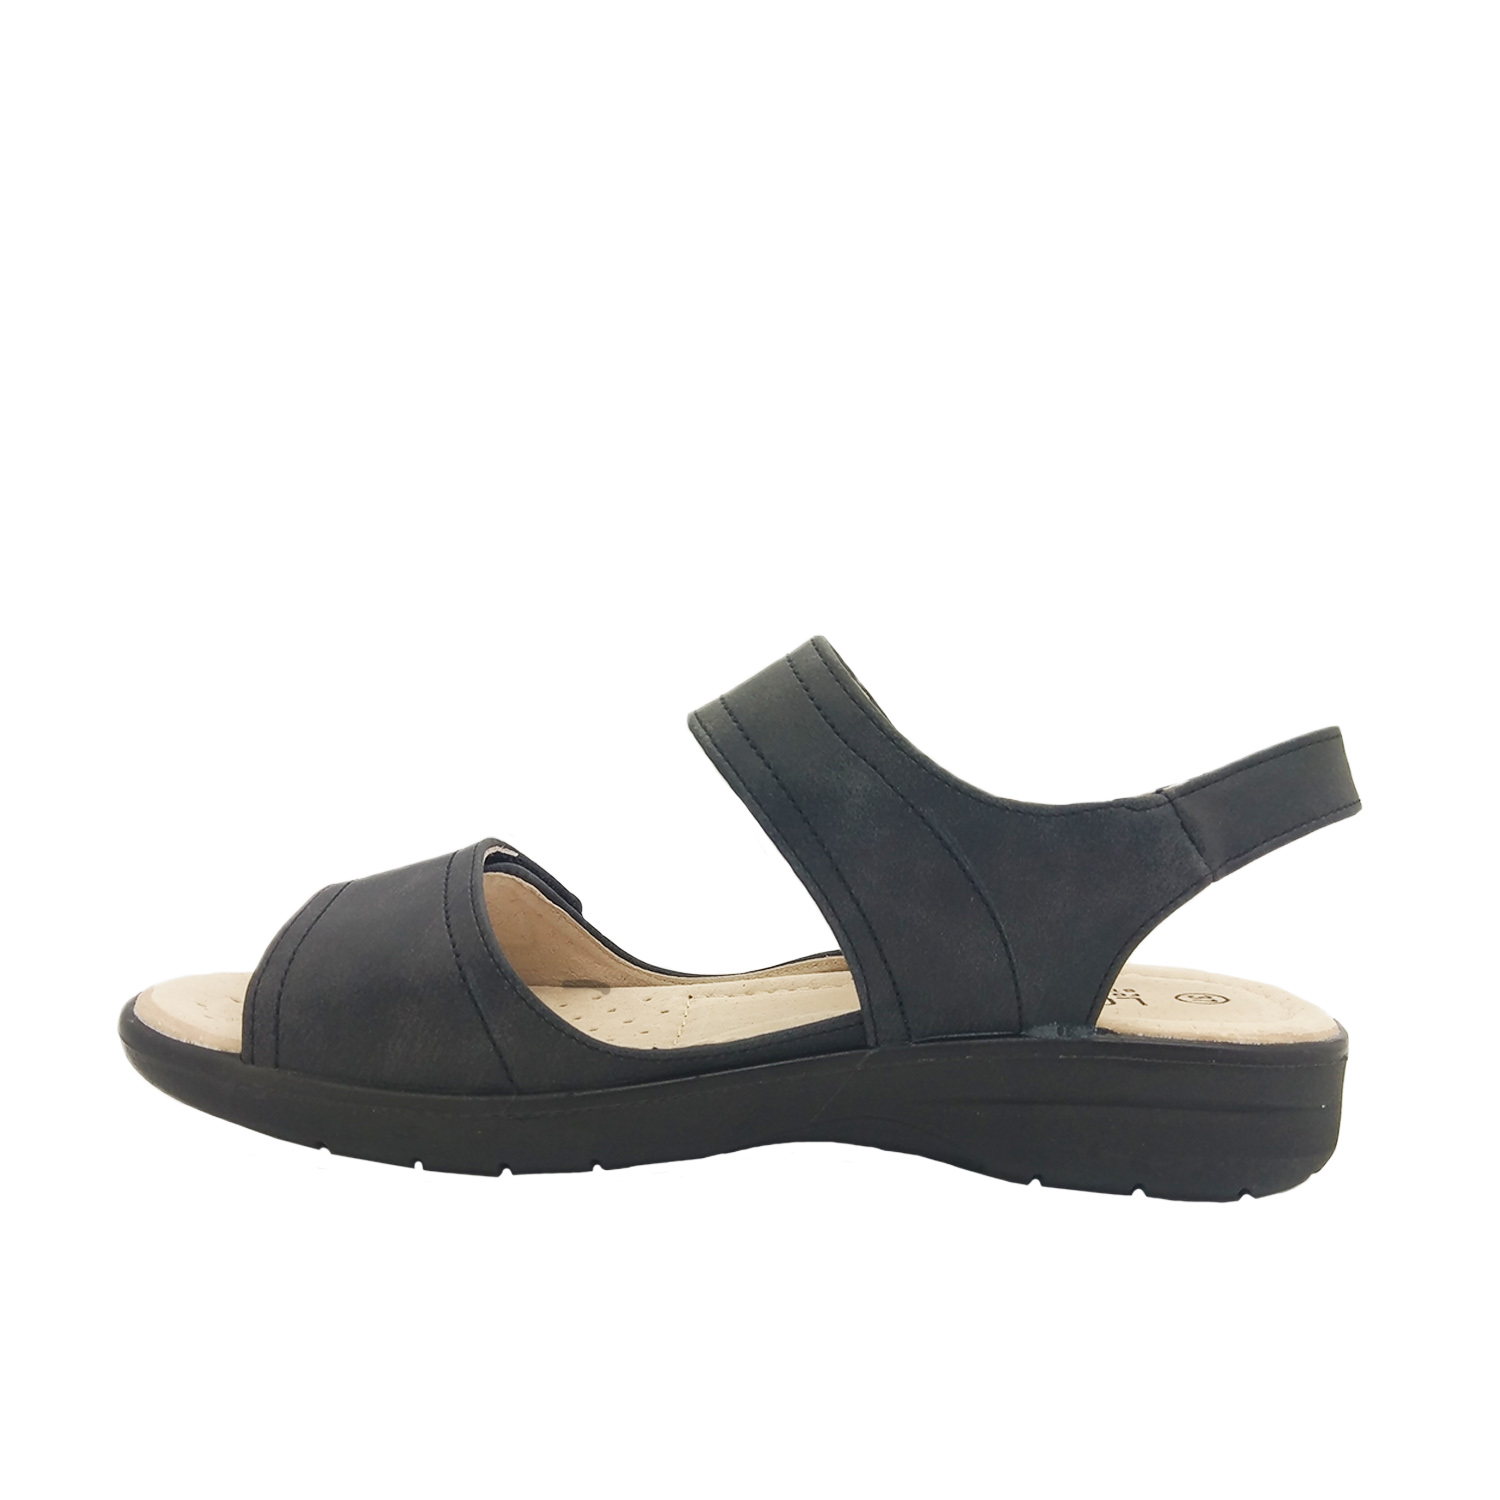 Ladies Shoes Lorella Avery Slingback Comfort Sandal Adjustable Tabs | eBay